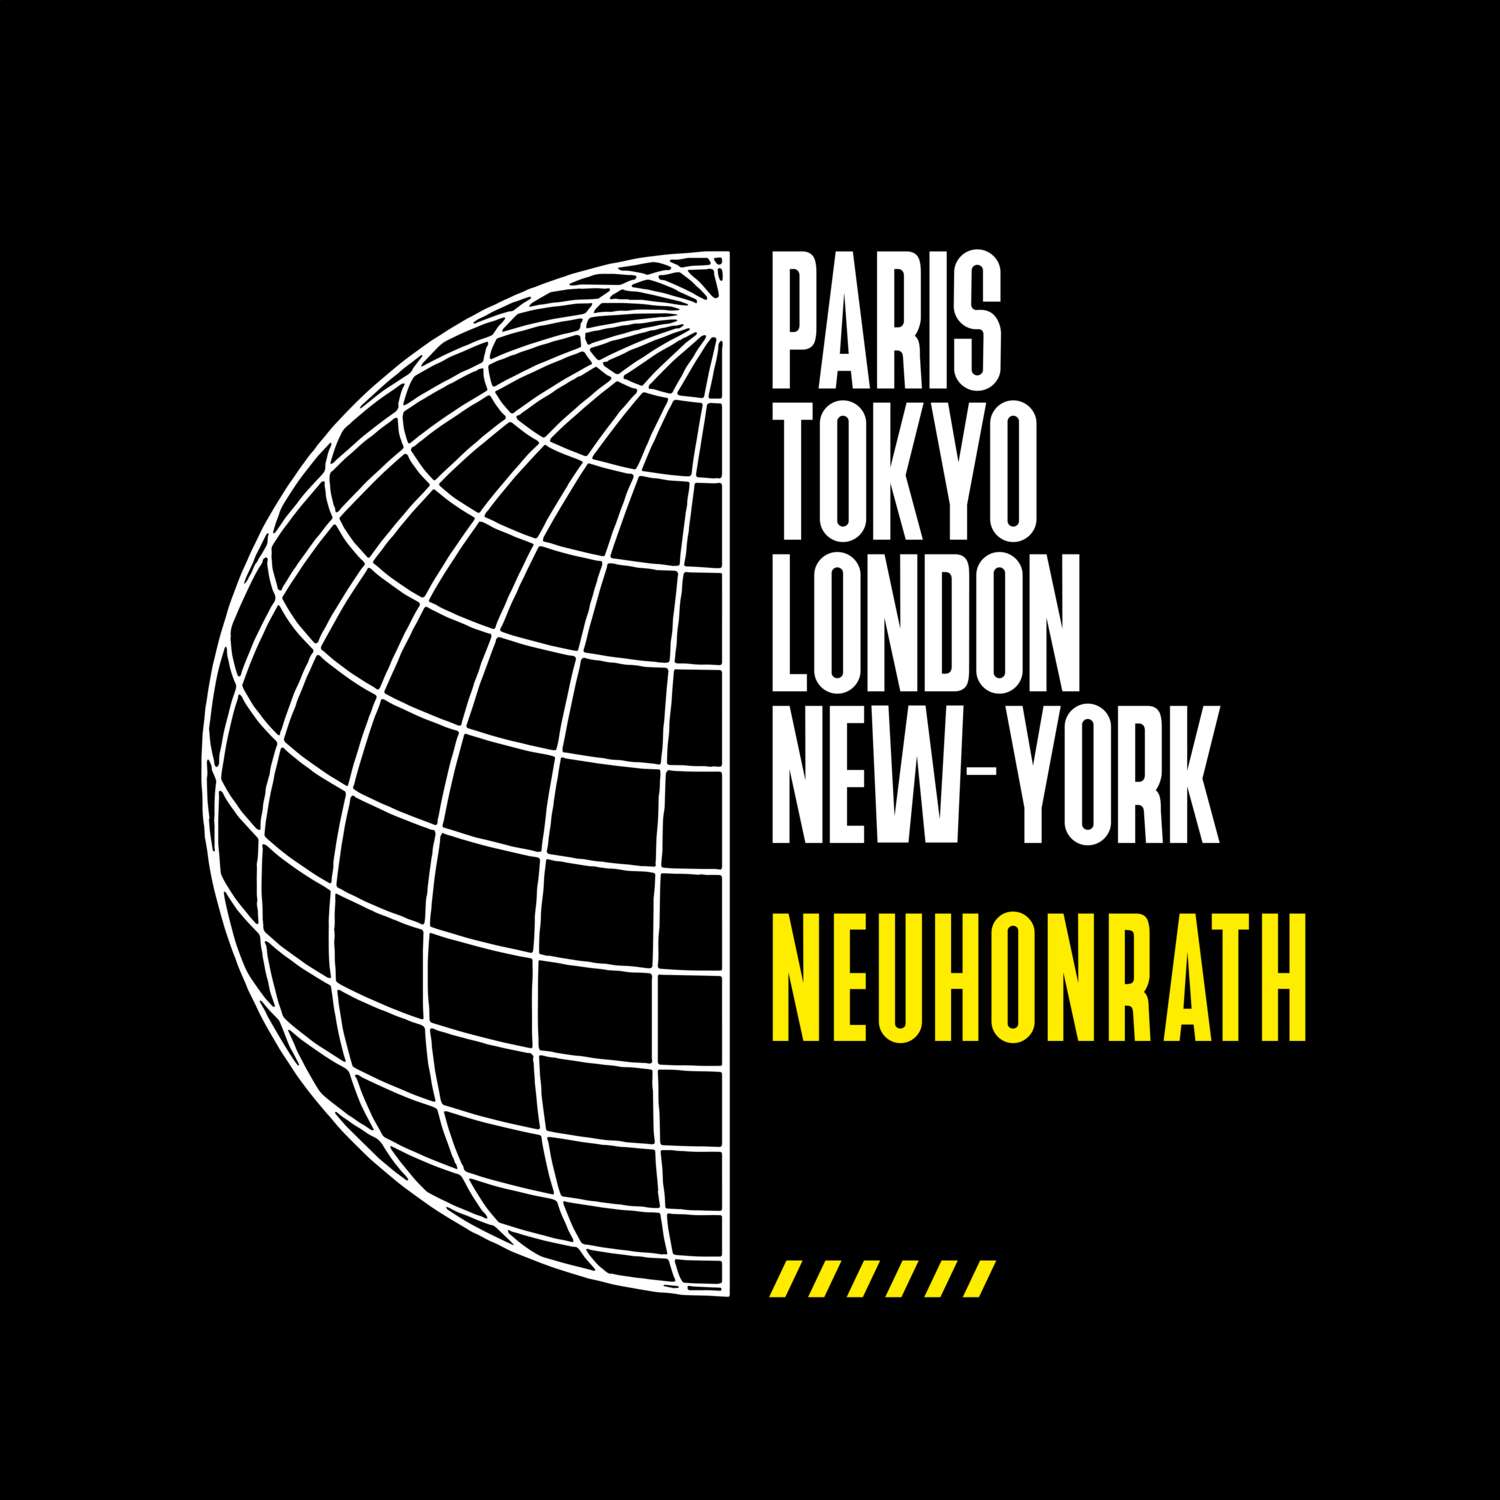 Neuhonrath T-Shirt »Paris Tokyo London«